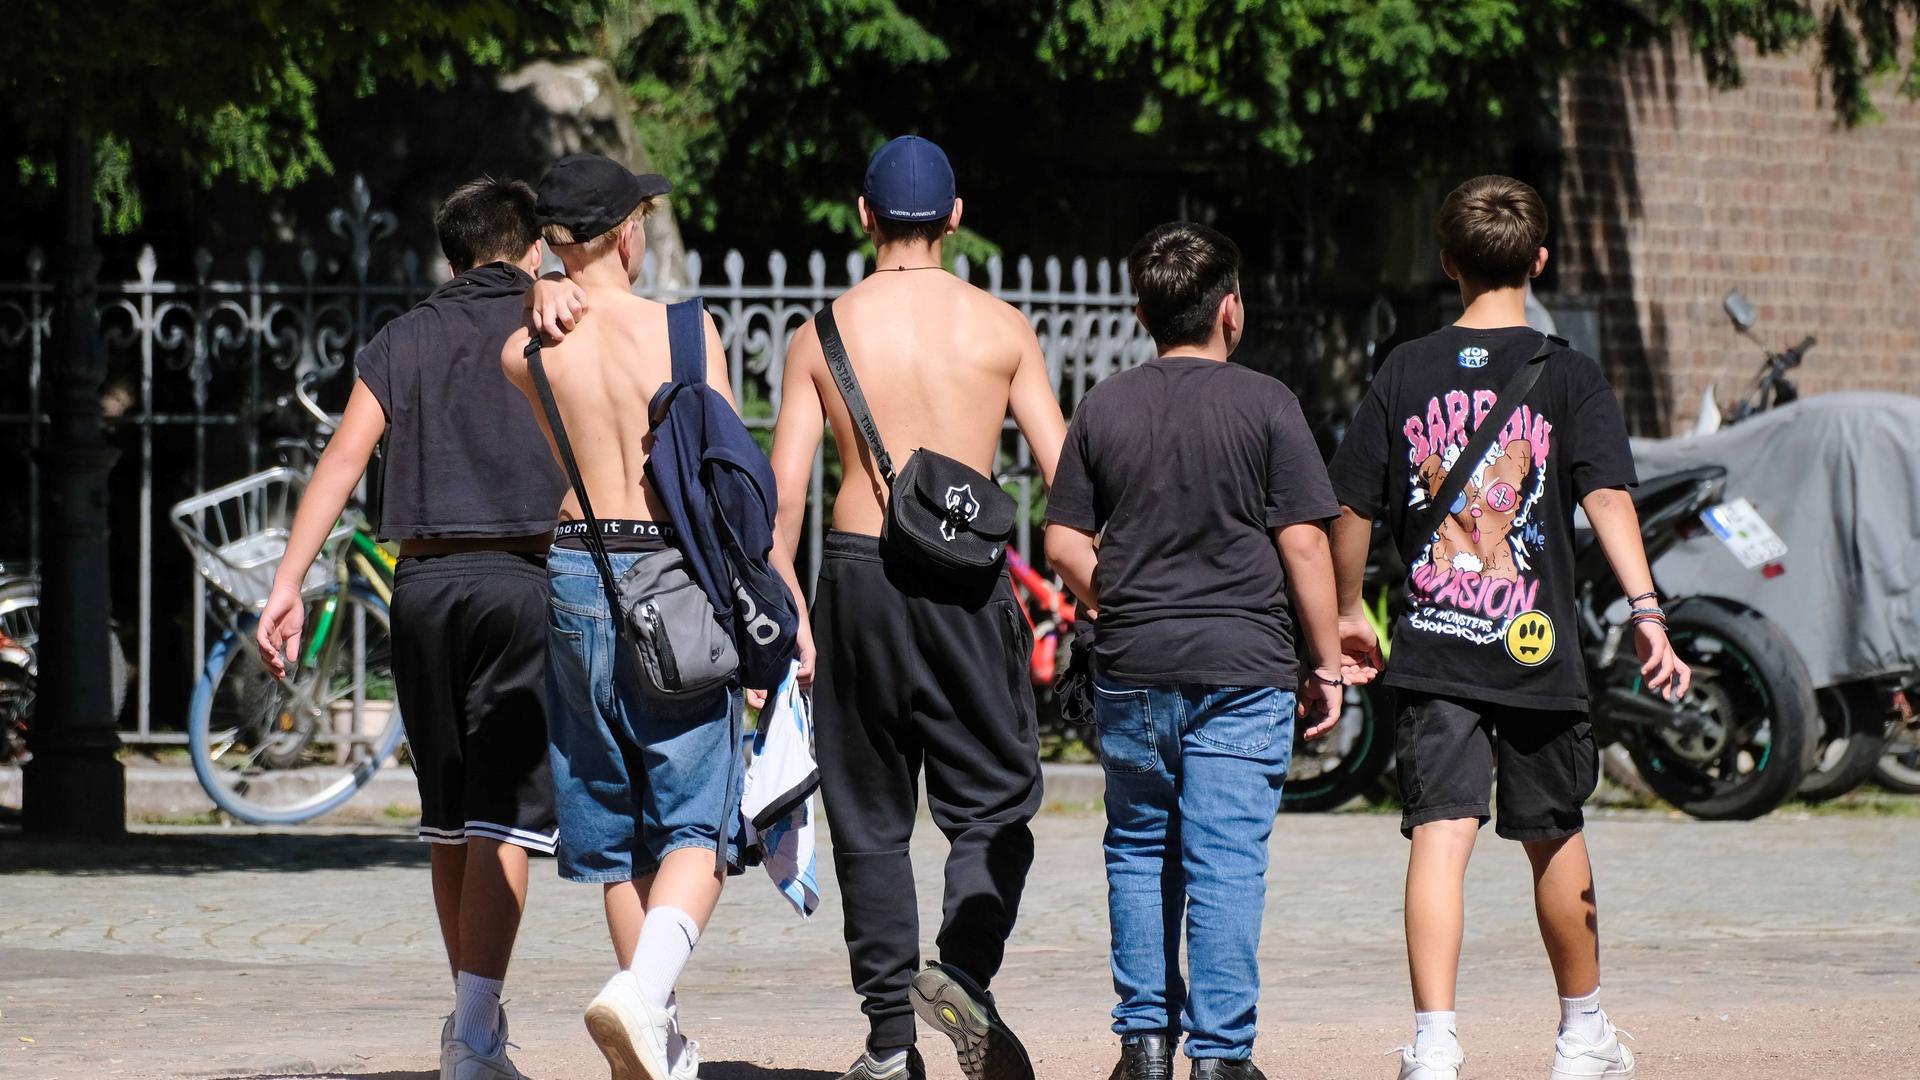 Fünf Jugendliche auf dem Schulweg in Düsseldorf. Sie tragen lockere, bunt bedruckte Kleidung. Zwei Jungen sind oberkörperfrei unterwegs.